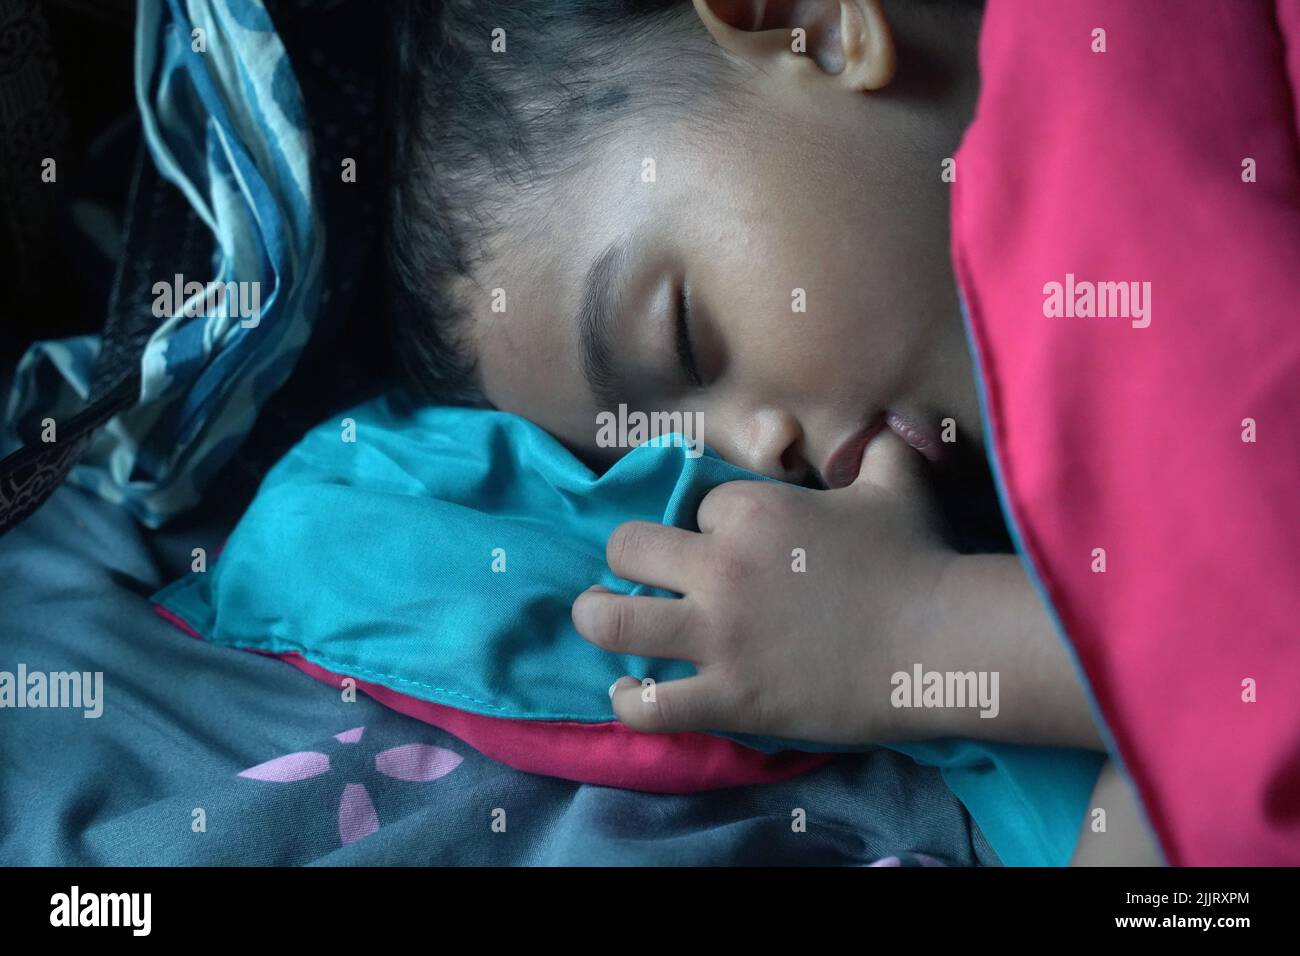 Un primer plano retrato de una chica del sur de Asia chupando su pulgar mientras duerme Foto de stock